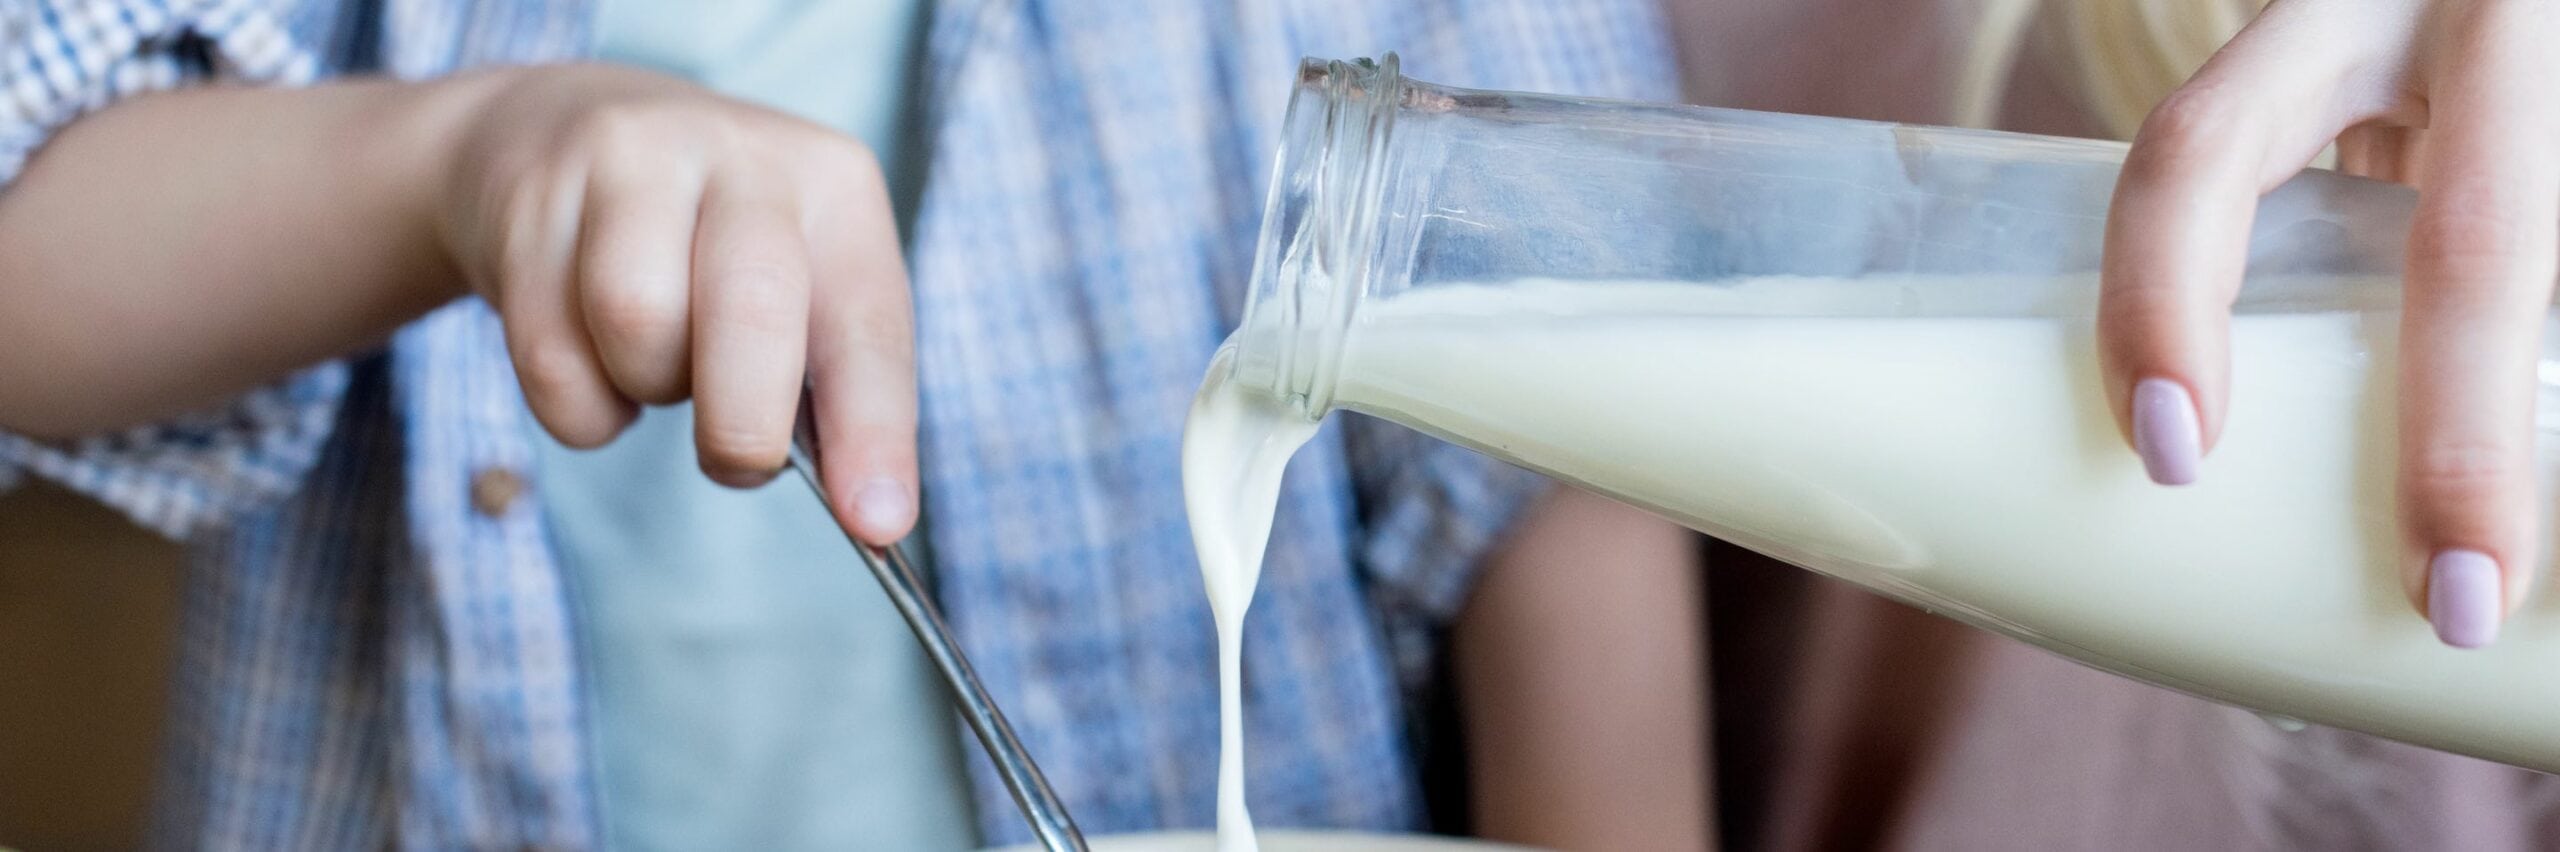 lactoferrine melk